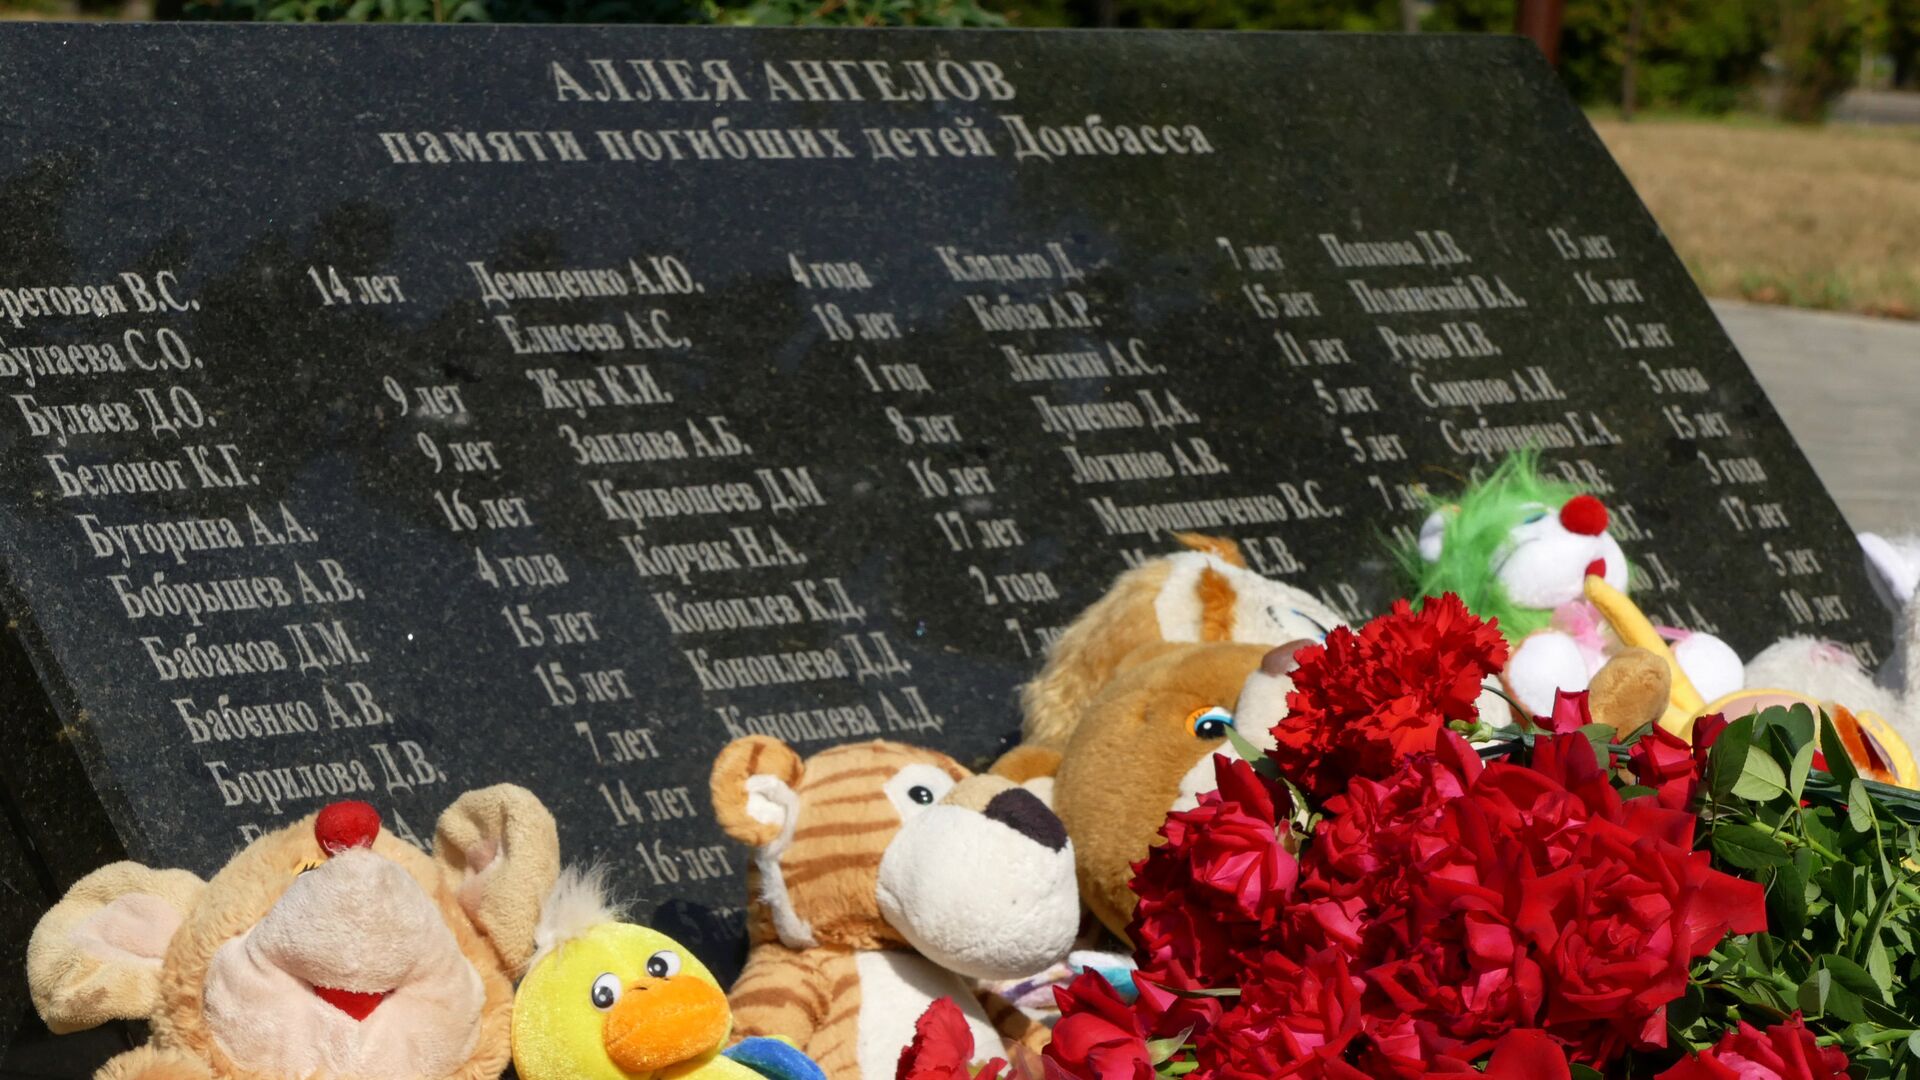 Цветы и игрушки, возложенные к памятнику Аллея Ангелов в Донецке  - РИА Новости, 1920, 04.03.2022